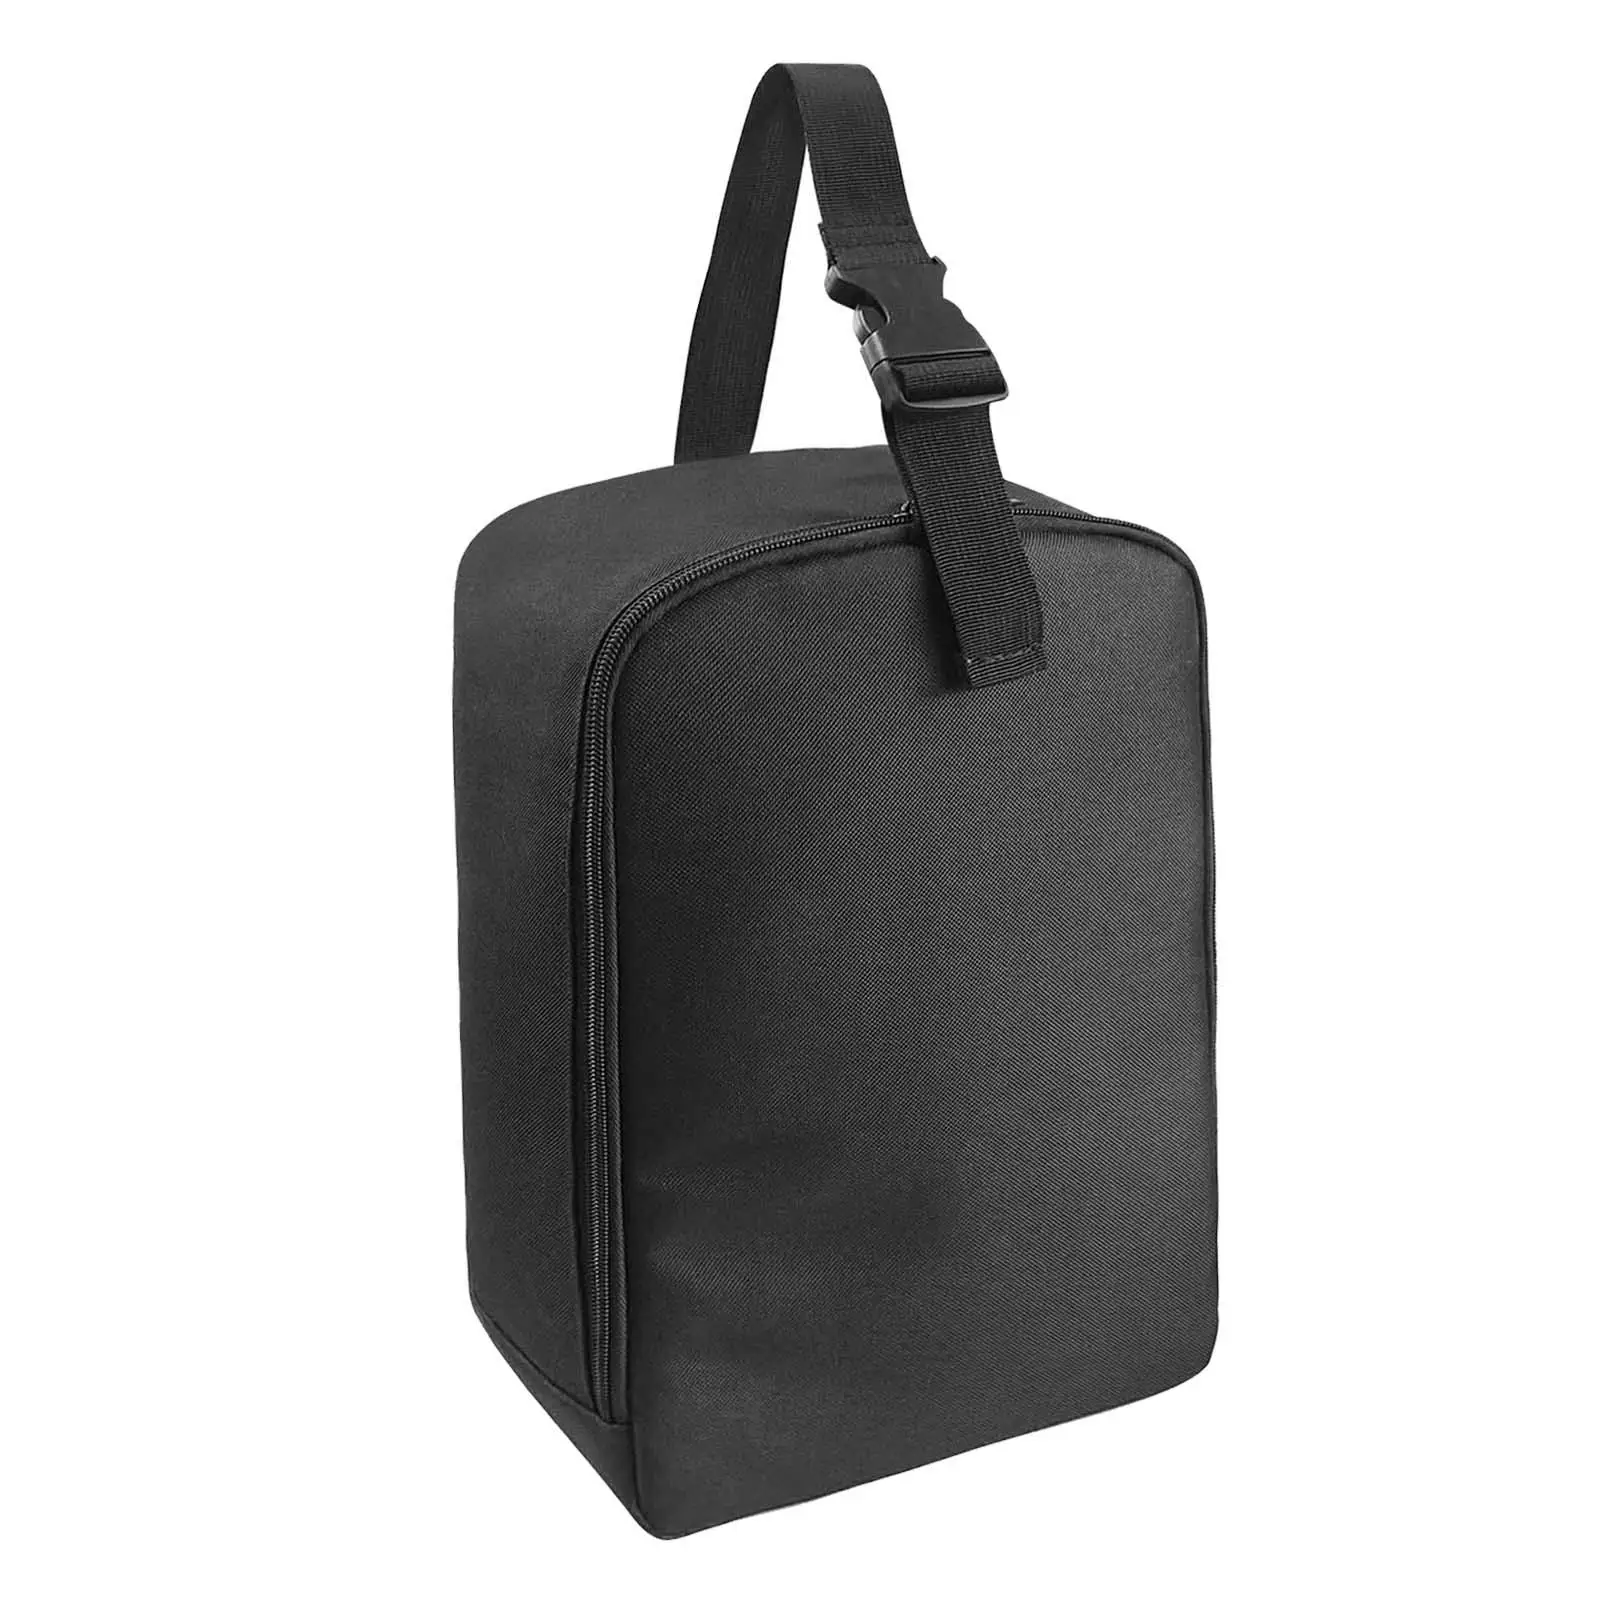 Garment Steamer Case Carrier Bag Portable Travel Steamer Bag for Travel Trip